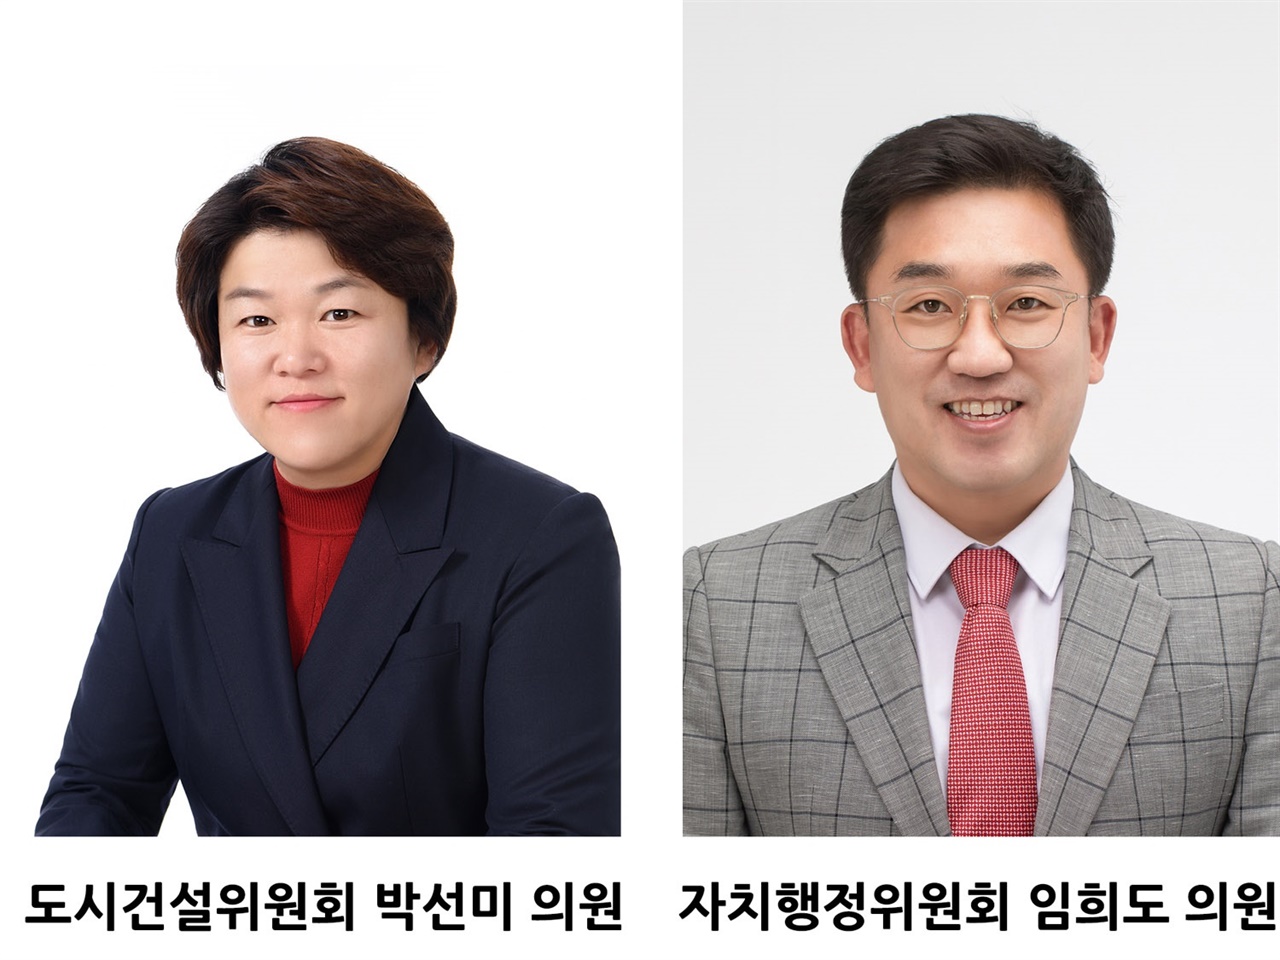 하남시의회 임희도 의원과 박선미 의원이 함께 공유재산 특혜 임대, 태양광 사업 초고속 승인에 대하여 의혹을 제기했다.